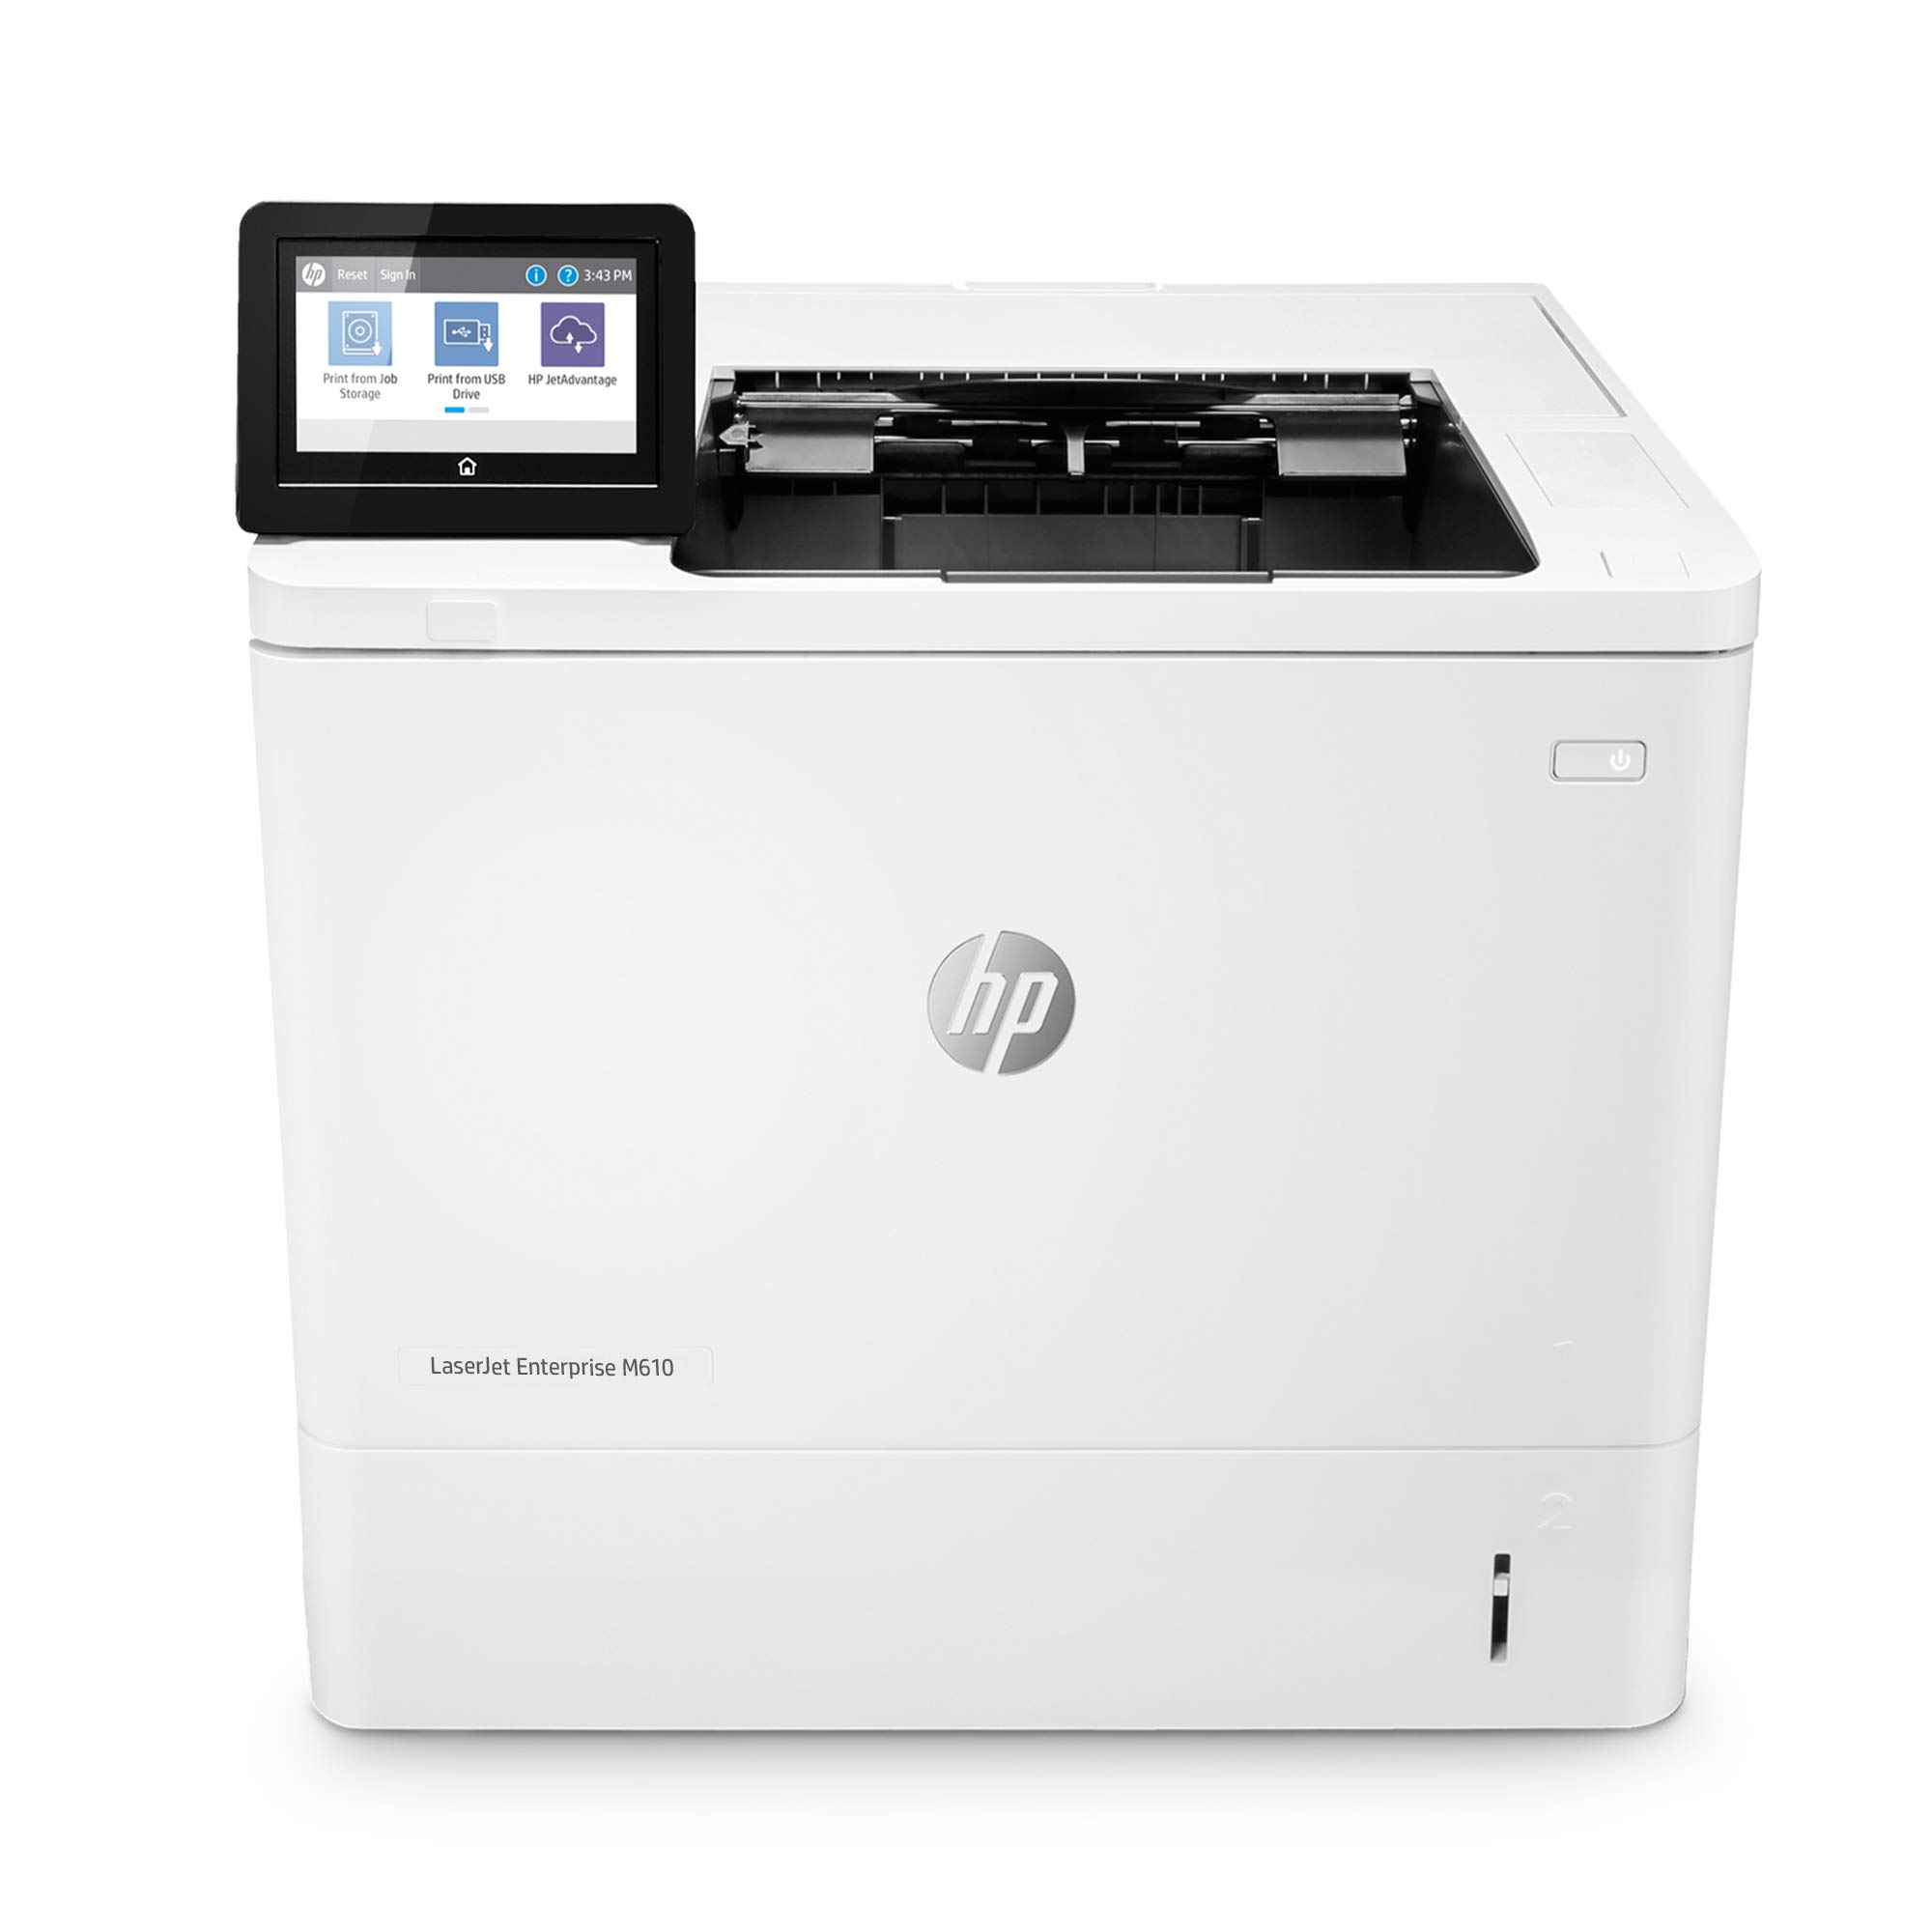 HP LaserJet Enterprise M610dn Monochrome Printer with b...